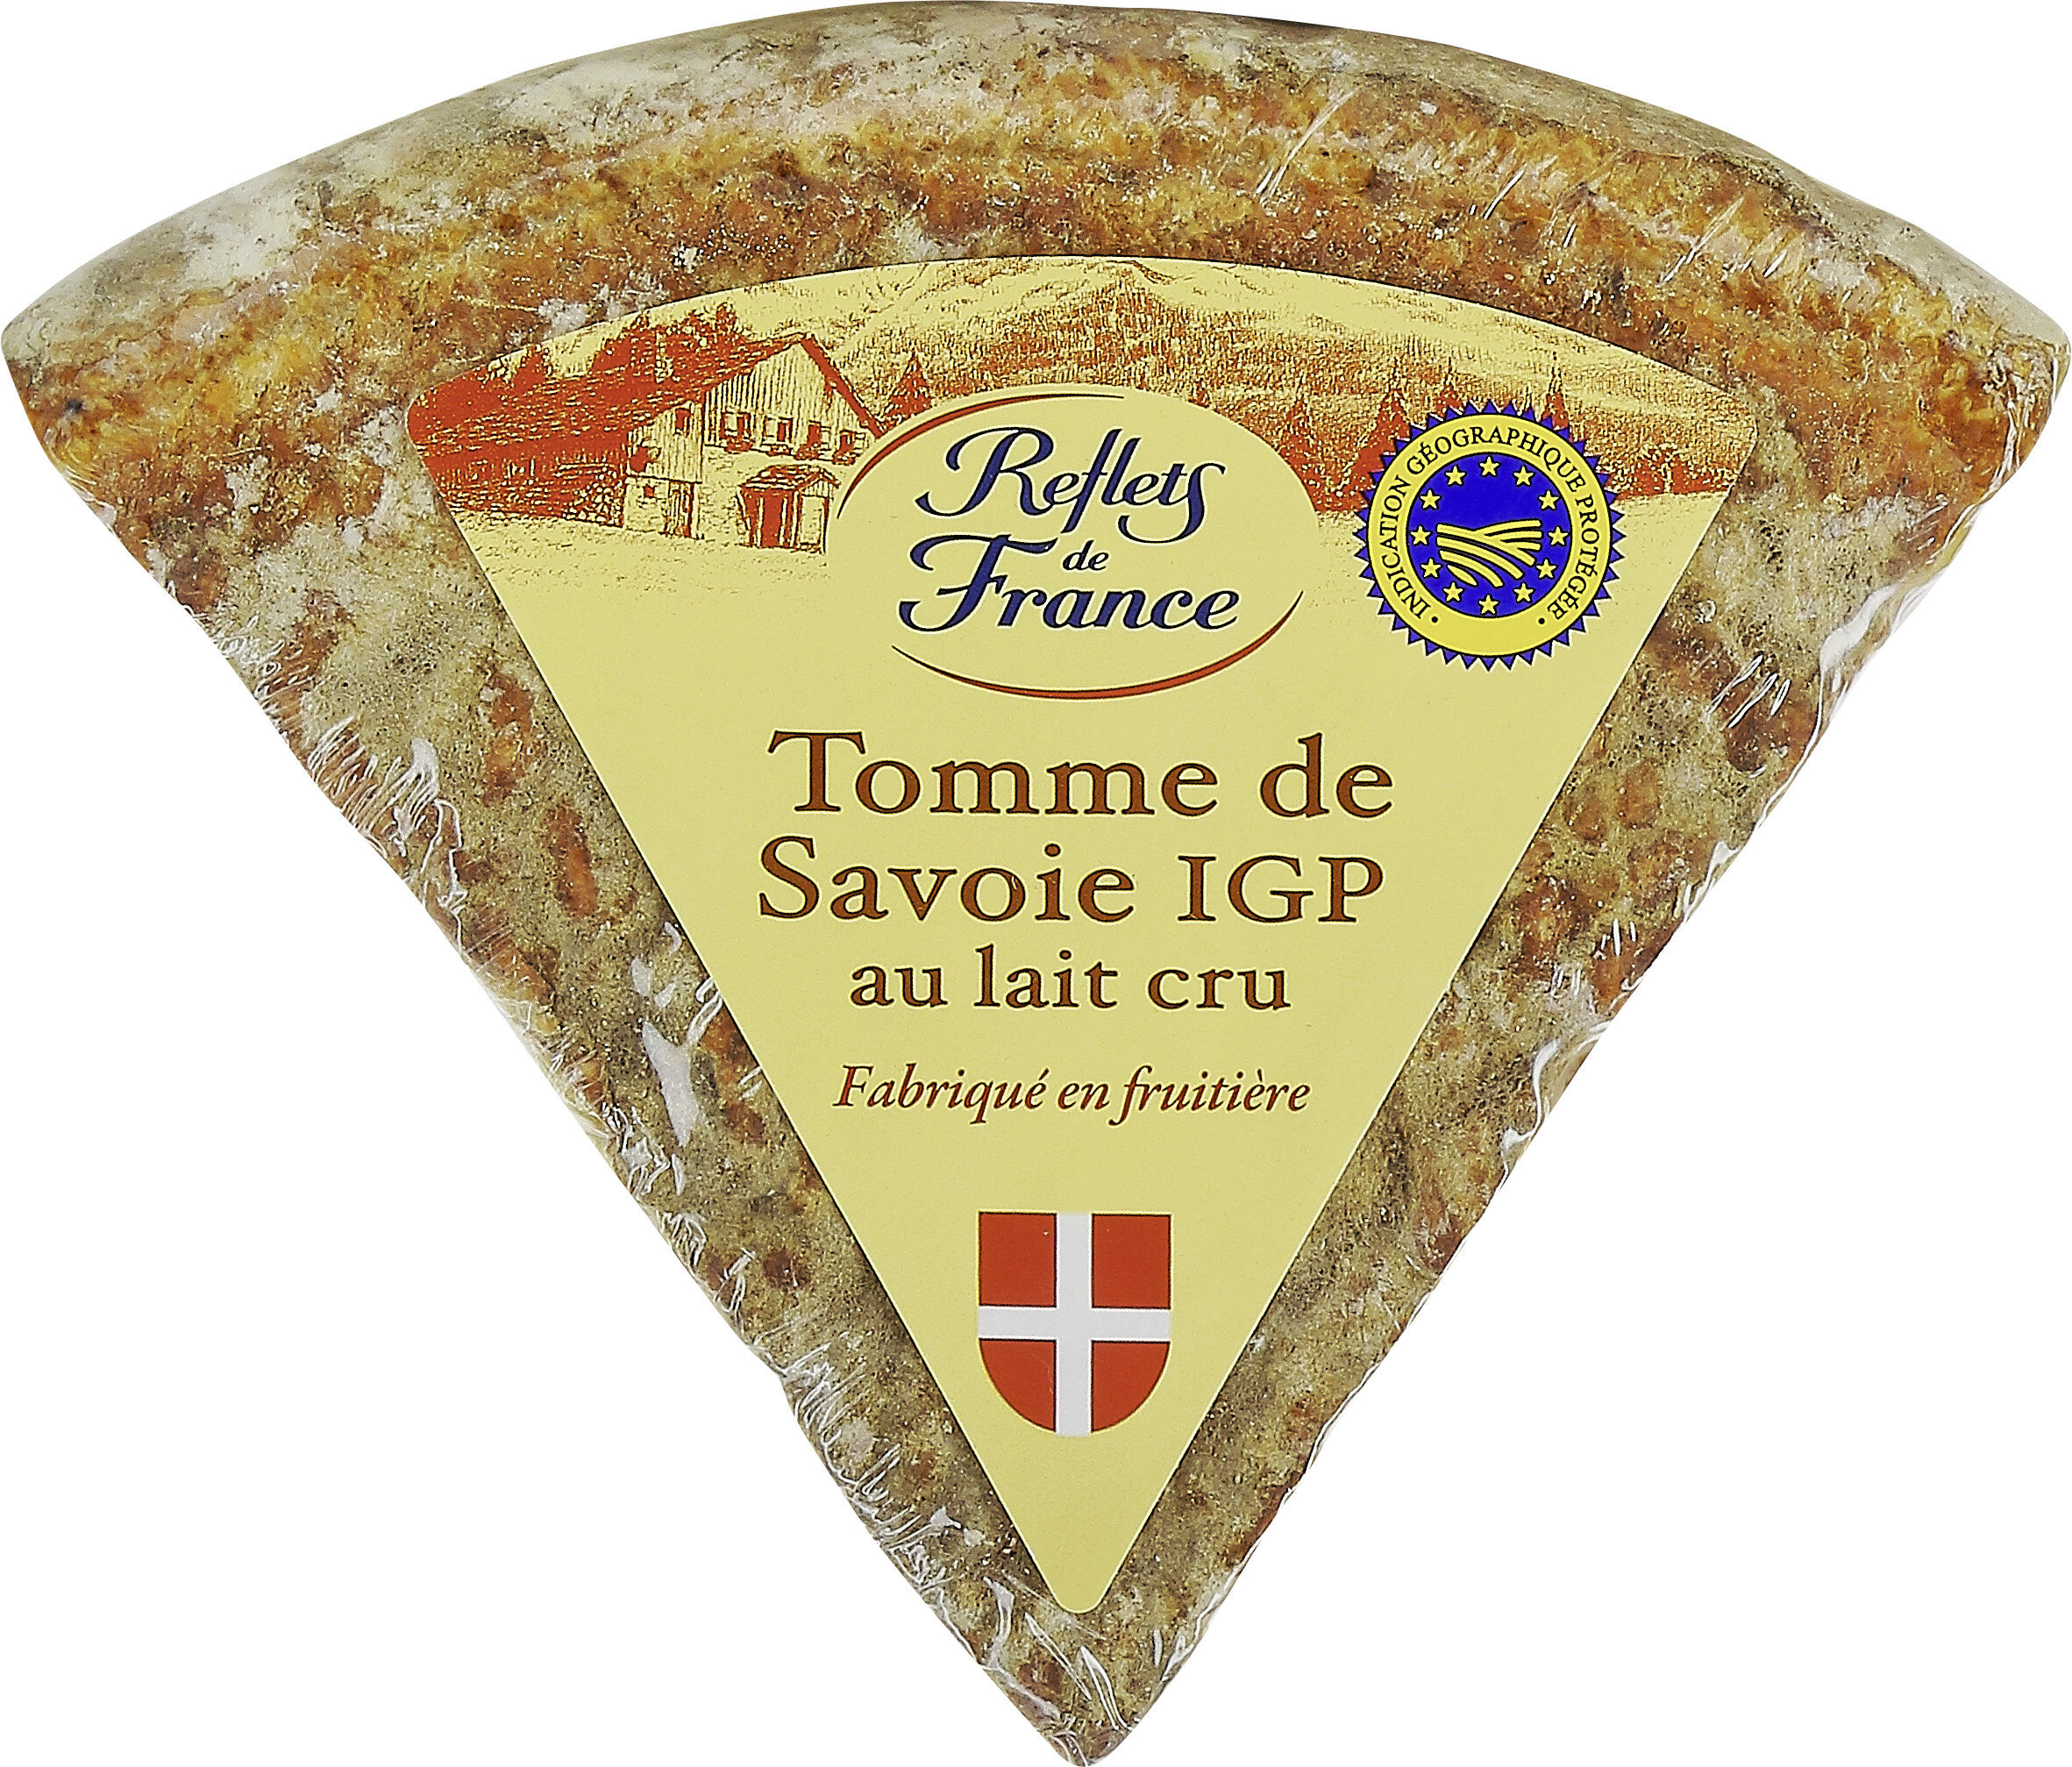 Tomme de Savoie IGP au lait cru - Produit